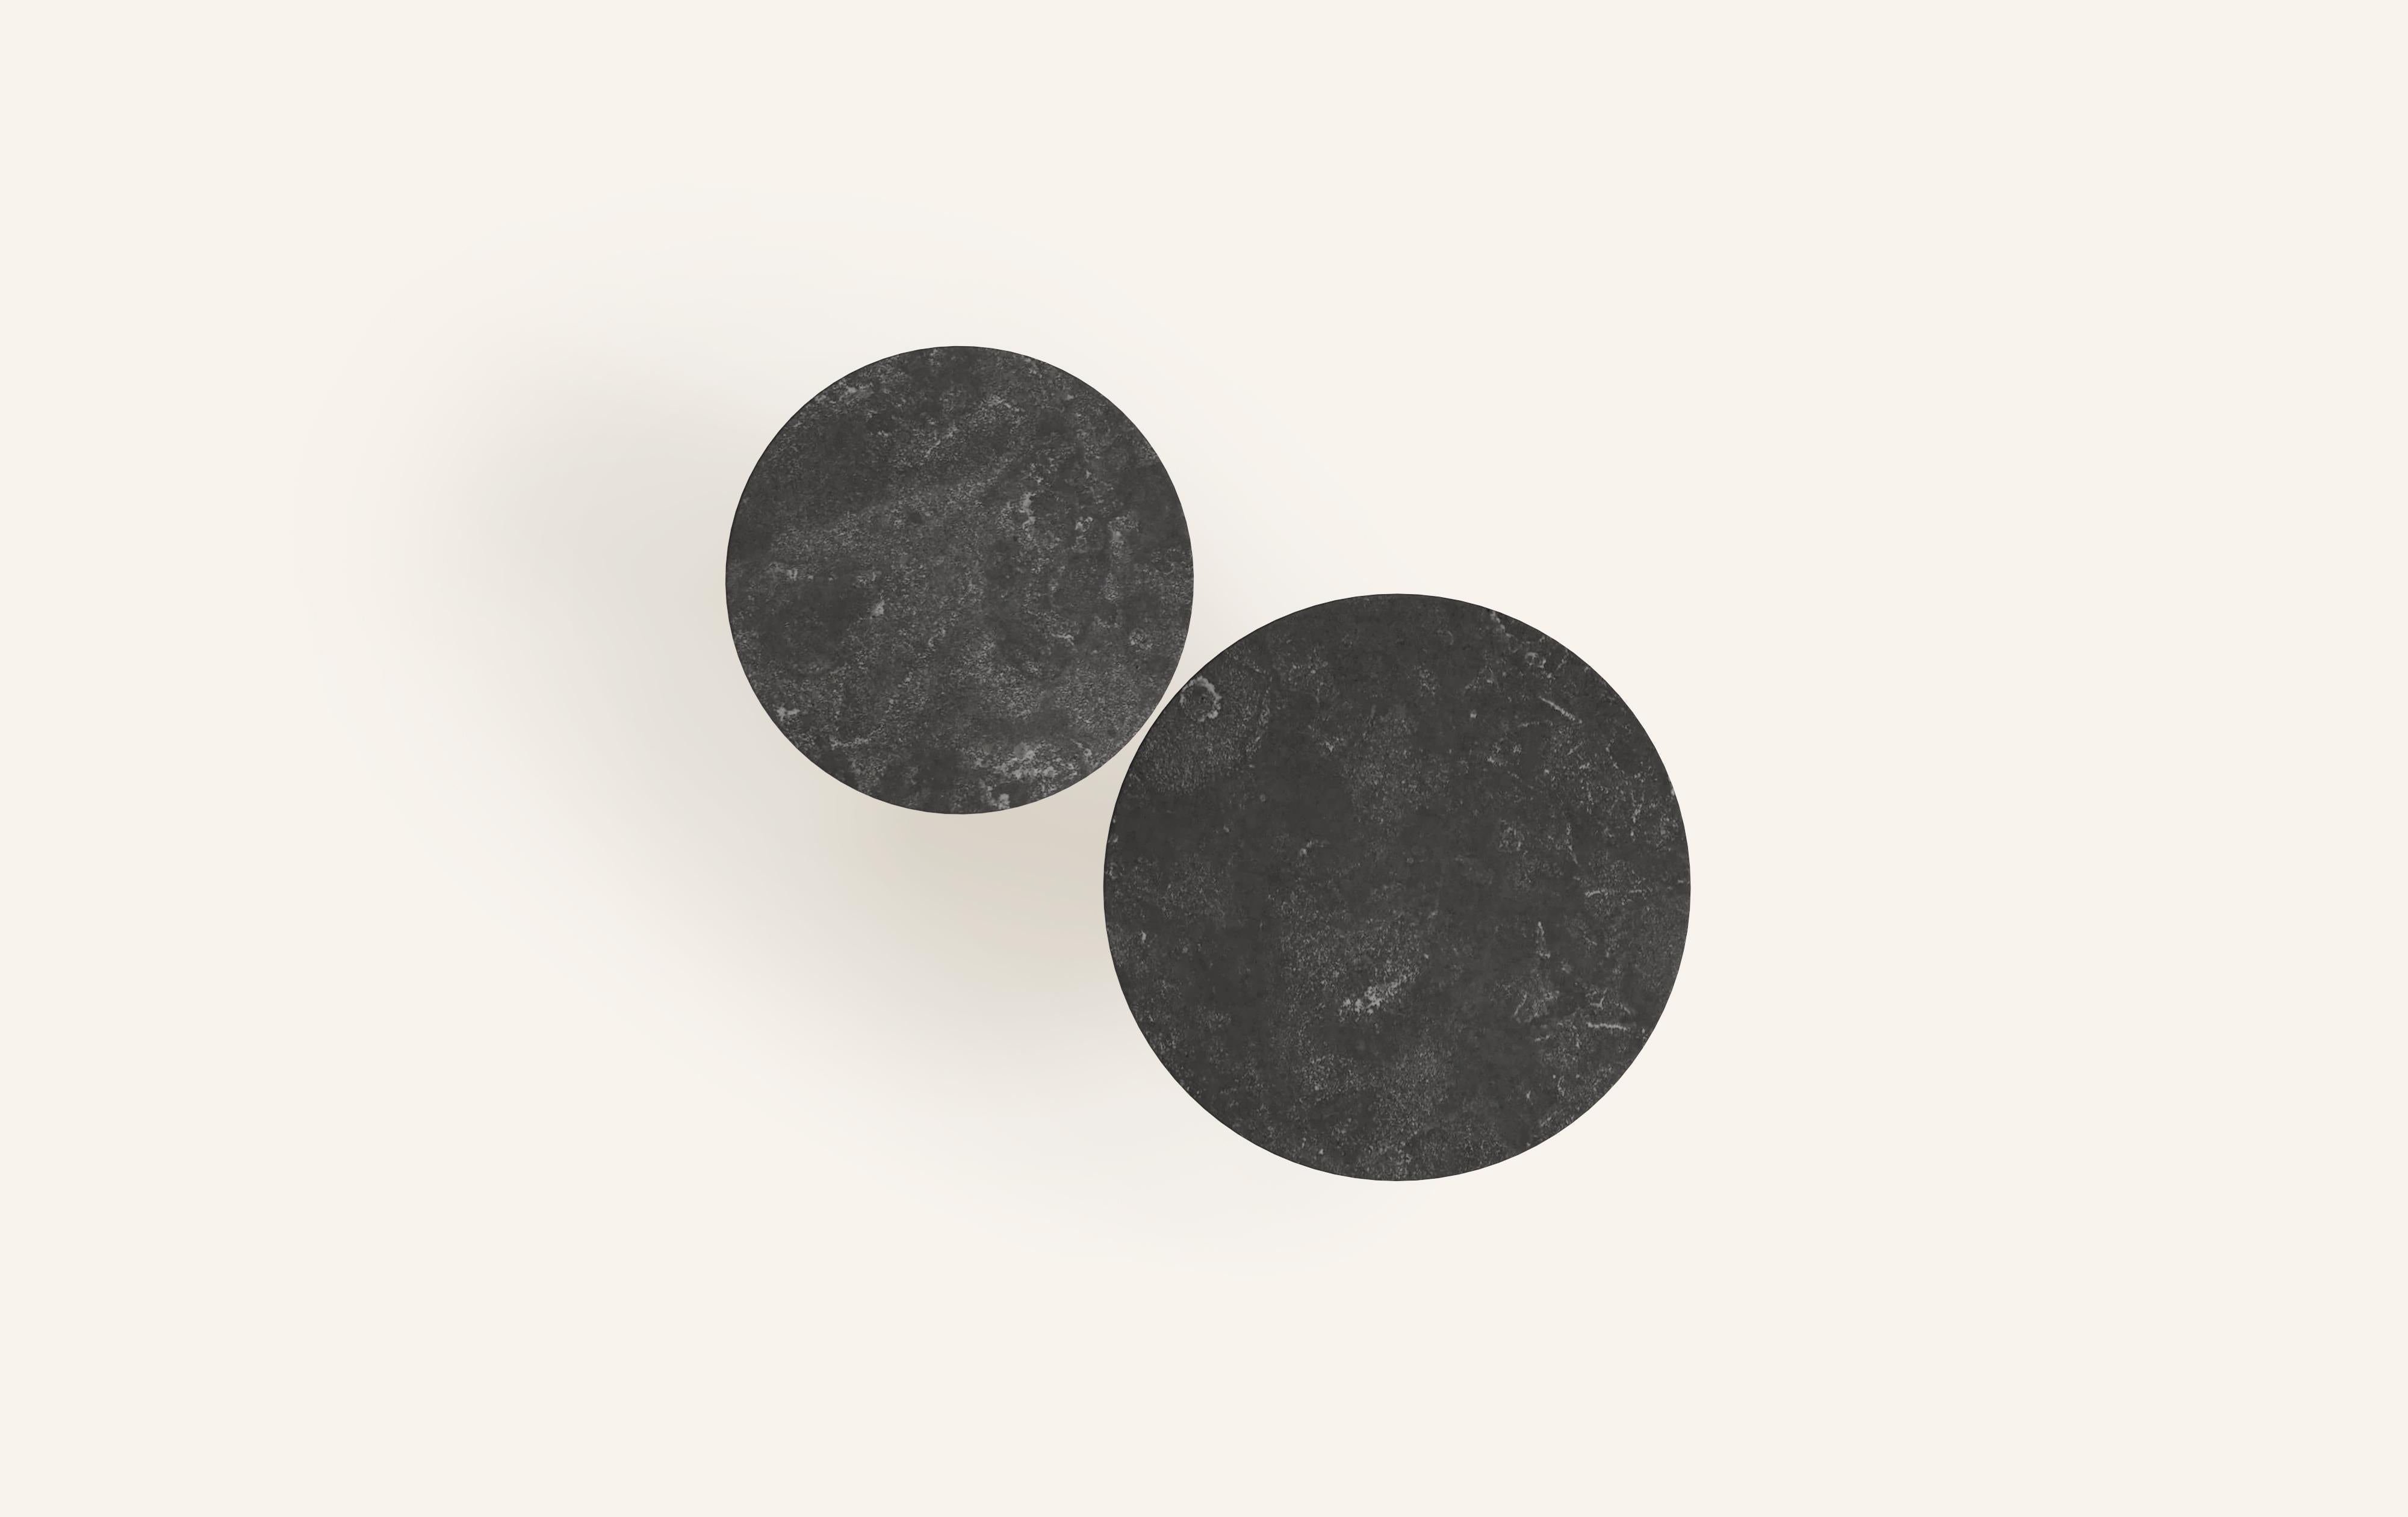 American FORM(LA) Sfera Round Side Table 18”L x 18”W x 20”H Nero Petite Granite For Sale